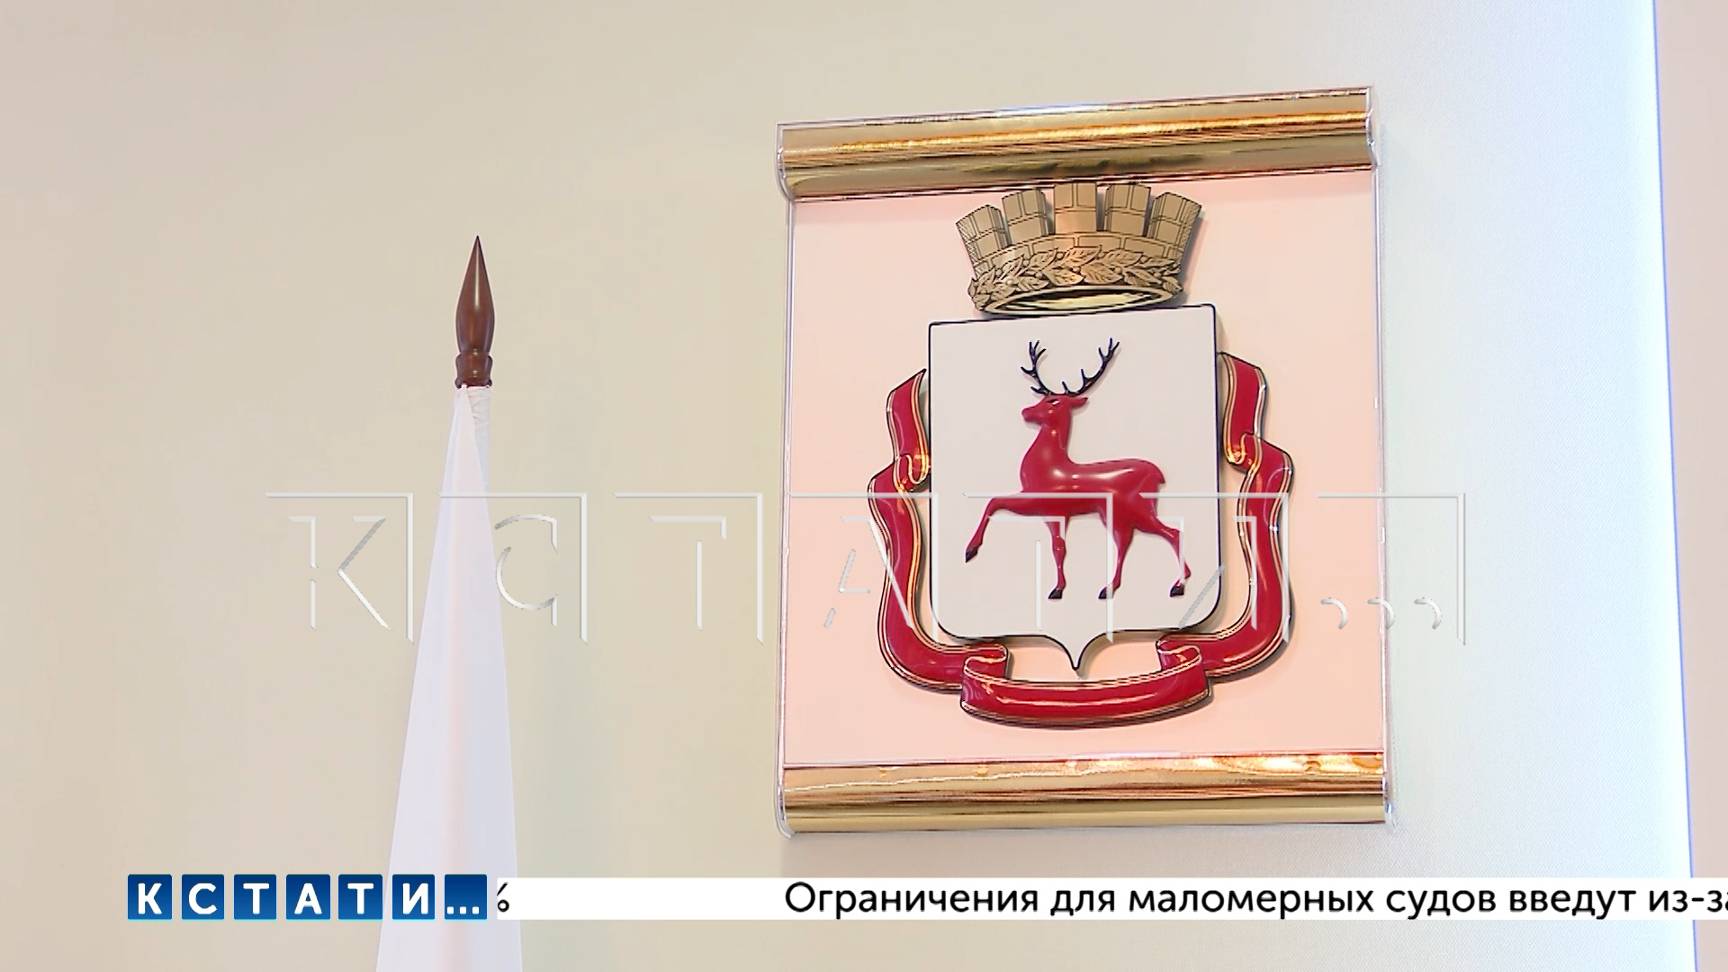 Нижний Новгород подписал соглашение о сотрудничестве с крымской Евпаторией